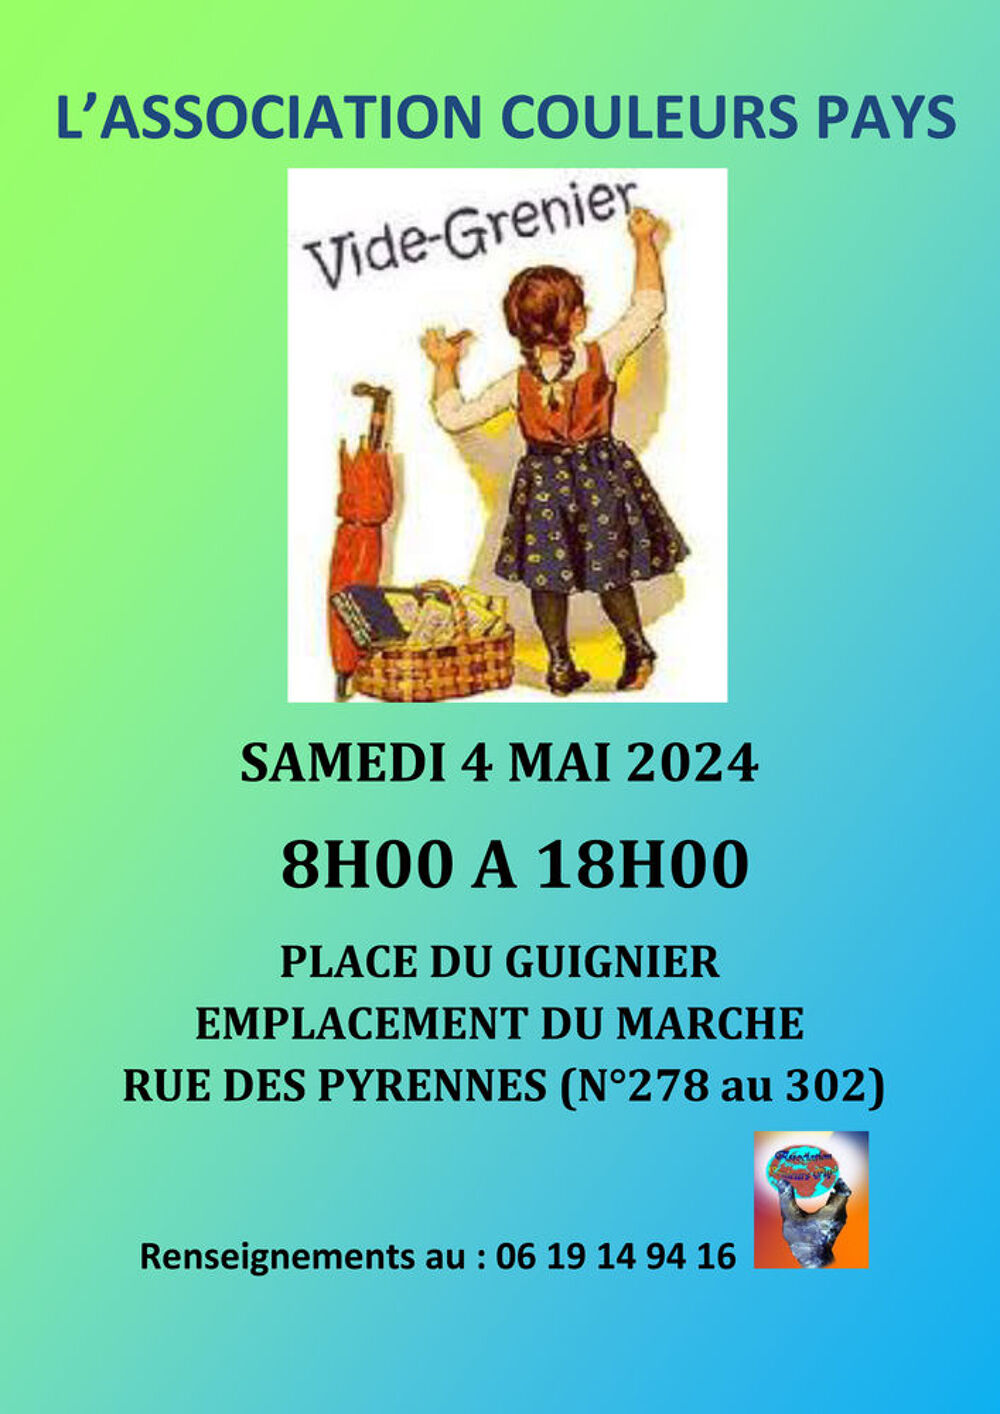 Vide-grenier COULEURS PAYS Samedi 4 mai 2024 Paris 20 Vide grenier, march aux puces, braderie